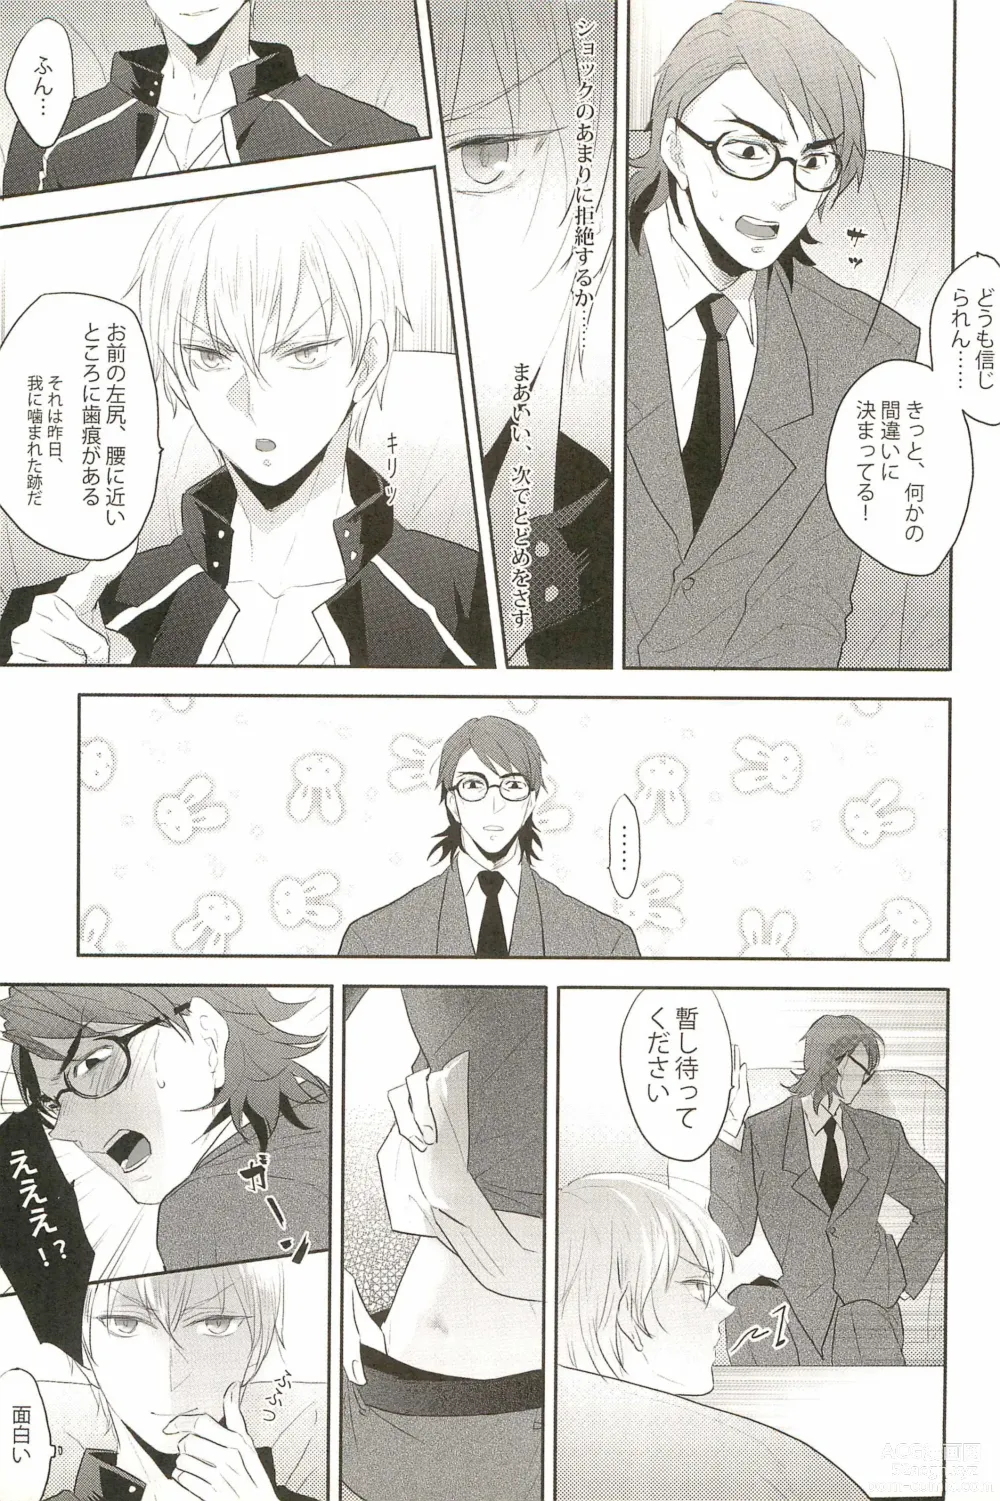 Page 7 of doujinshi Warera Dosei Shite Iru.